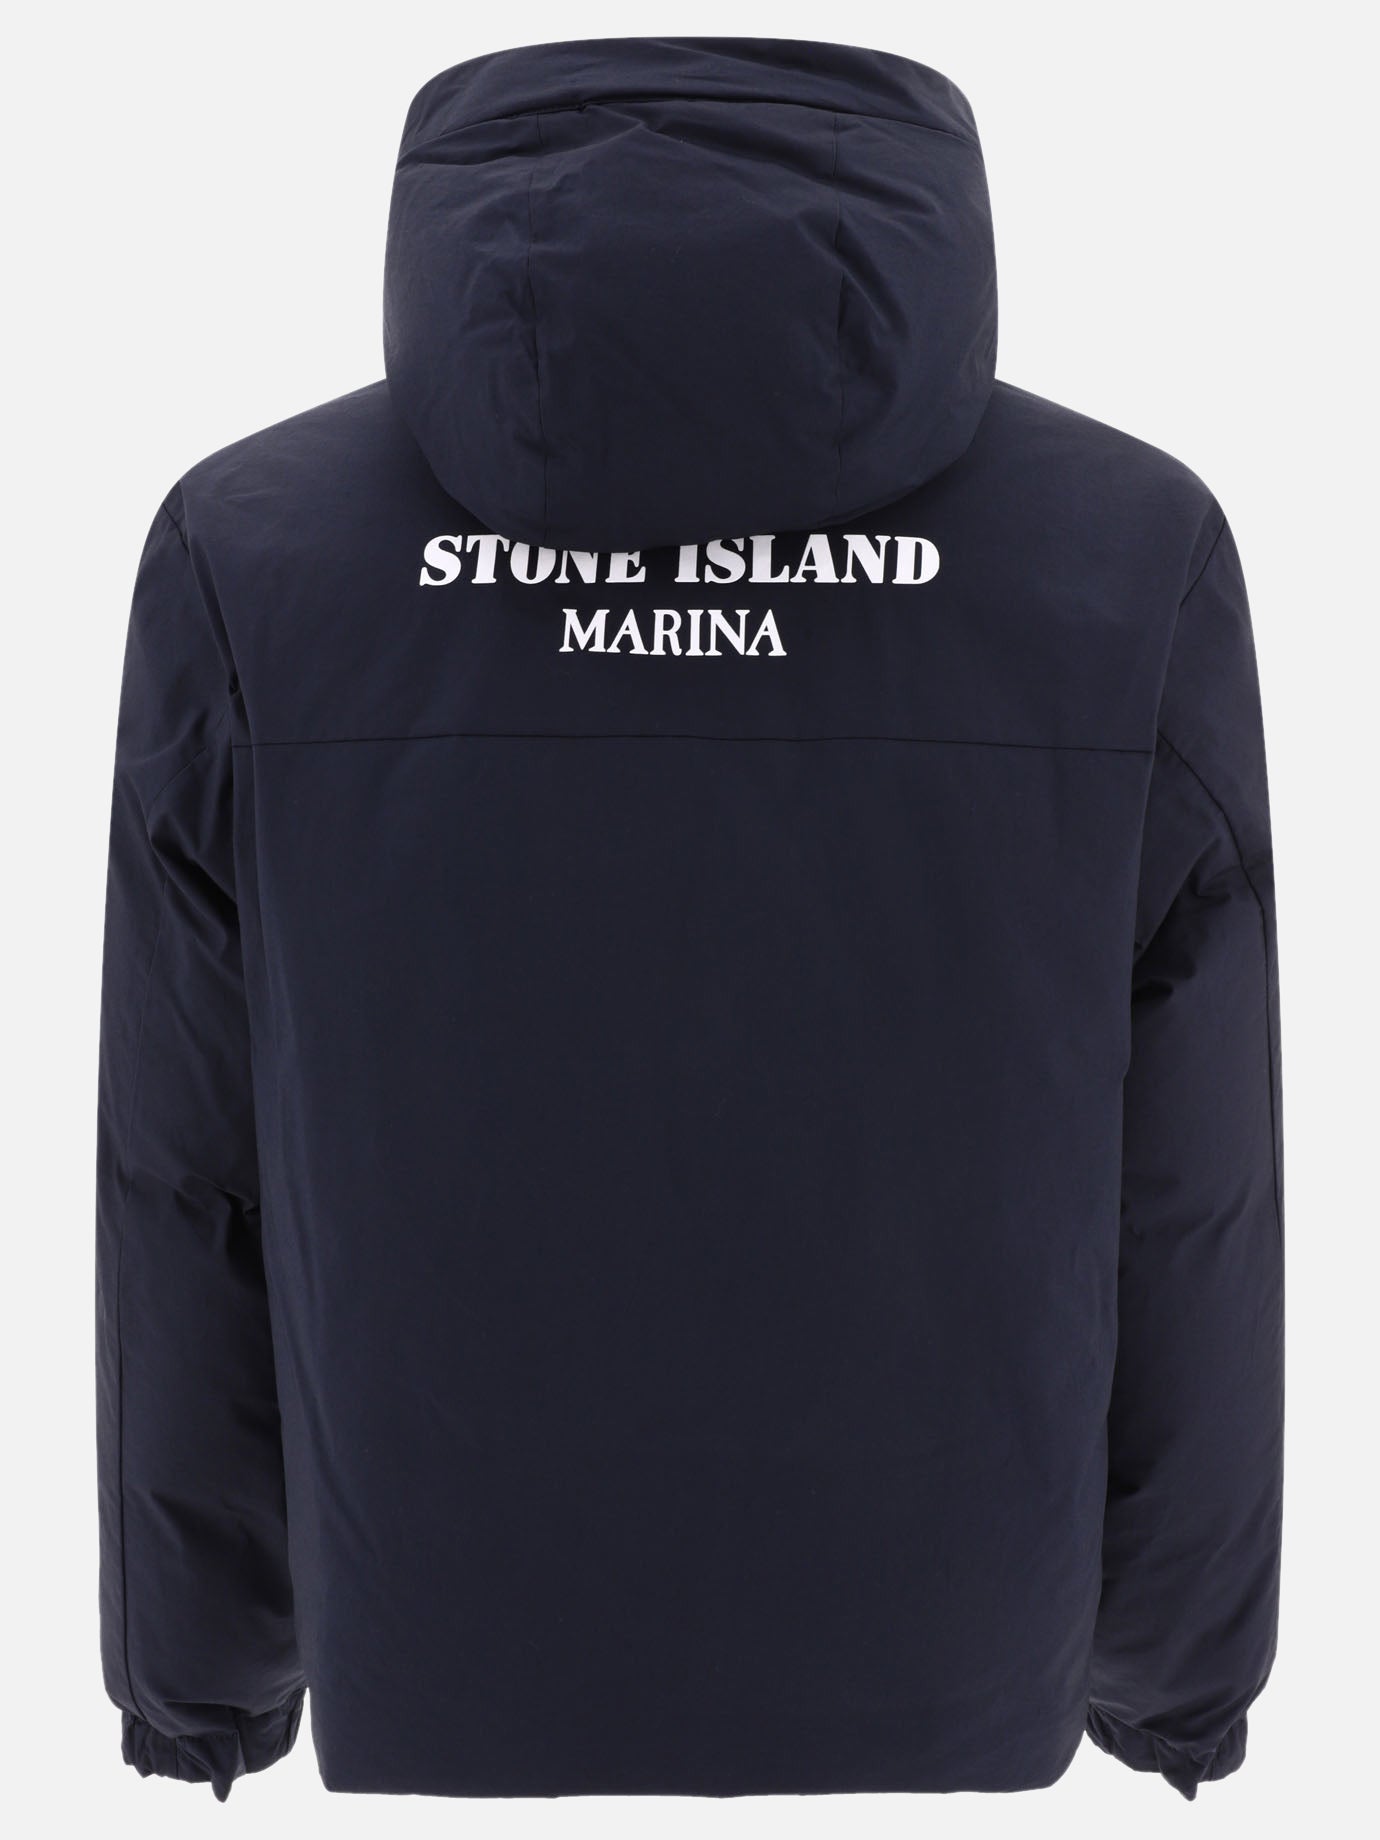 "Stone Island Marina" down jacket